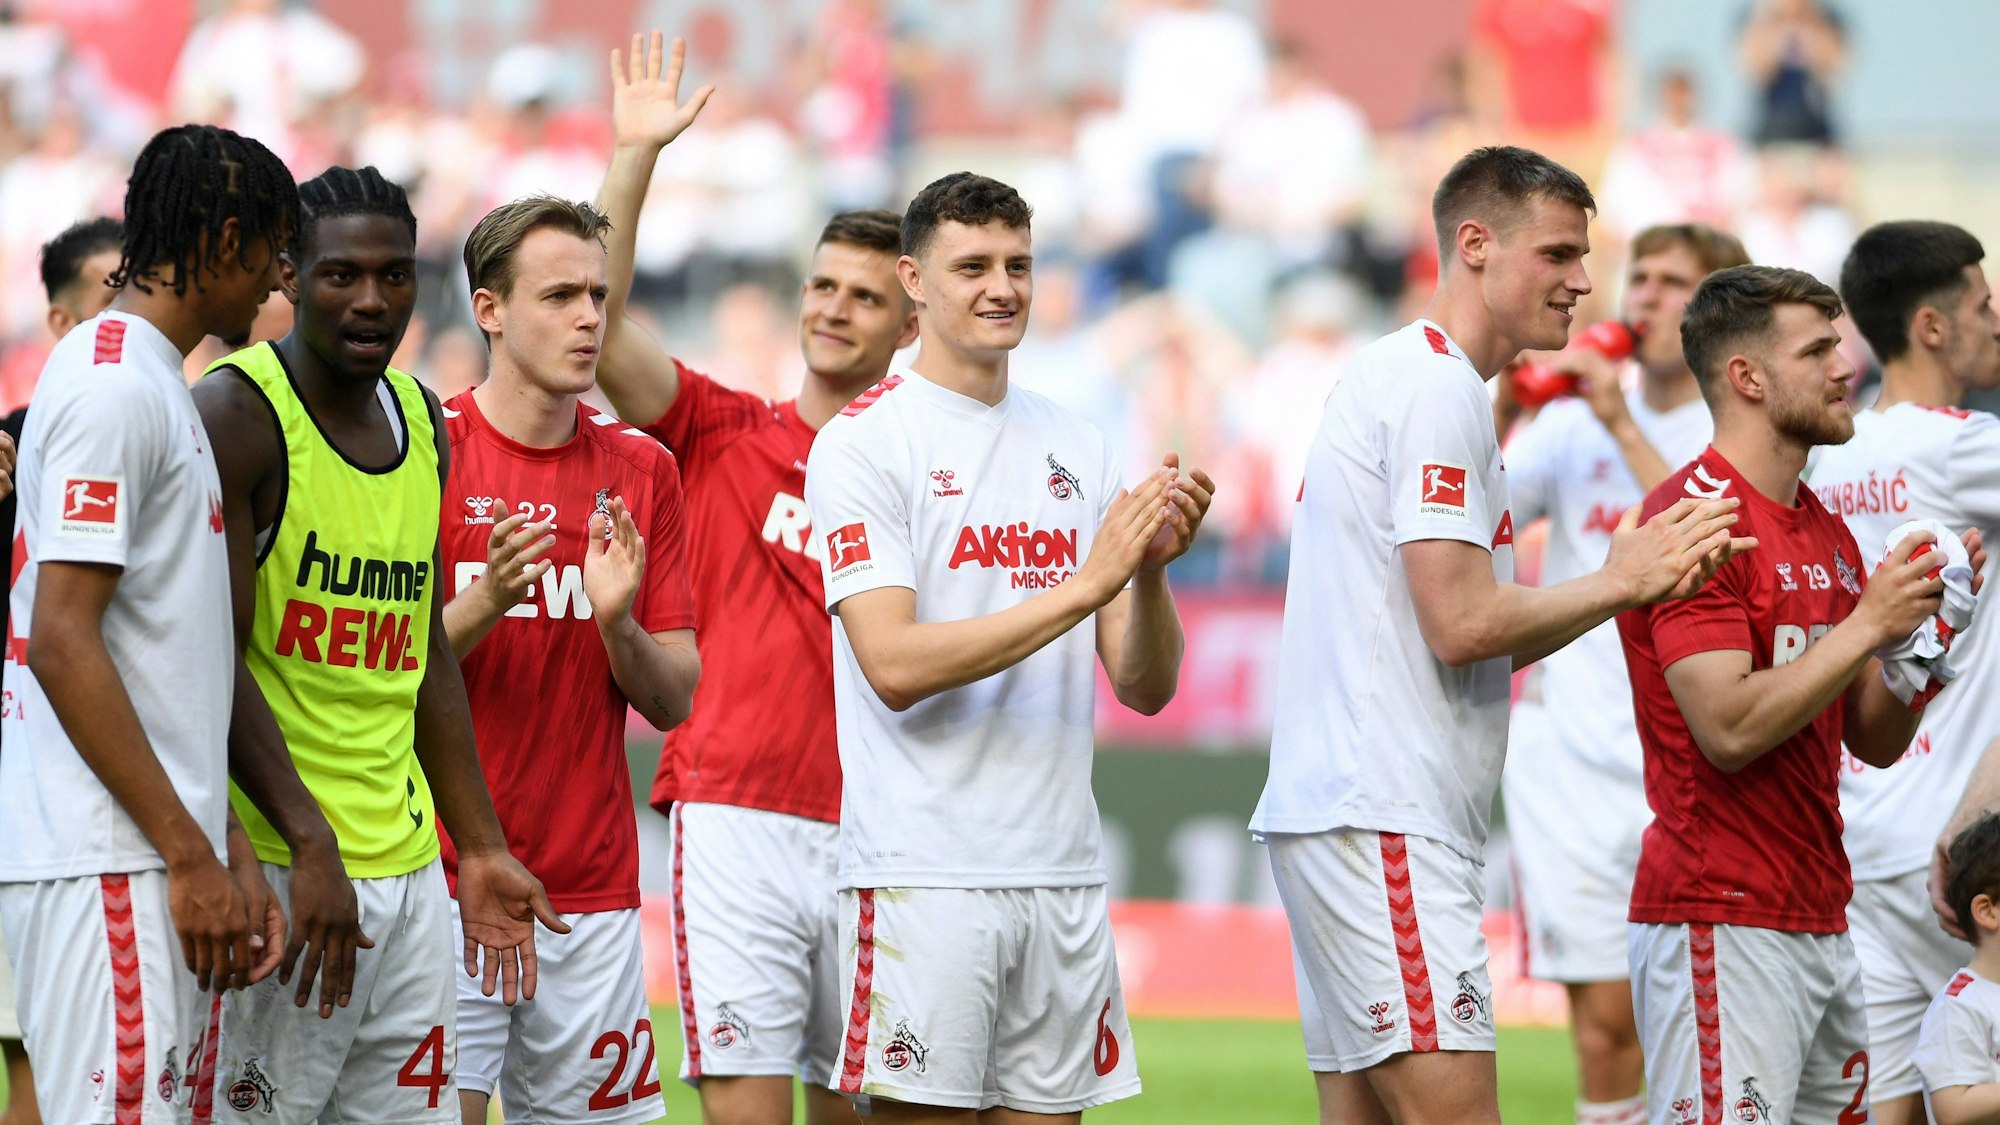 Die Spieler des 1. FC Köln jubeln nach dem Spiel gegen Union Berlin.